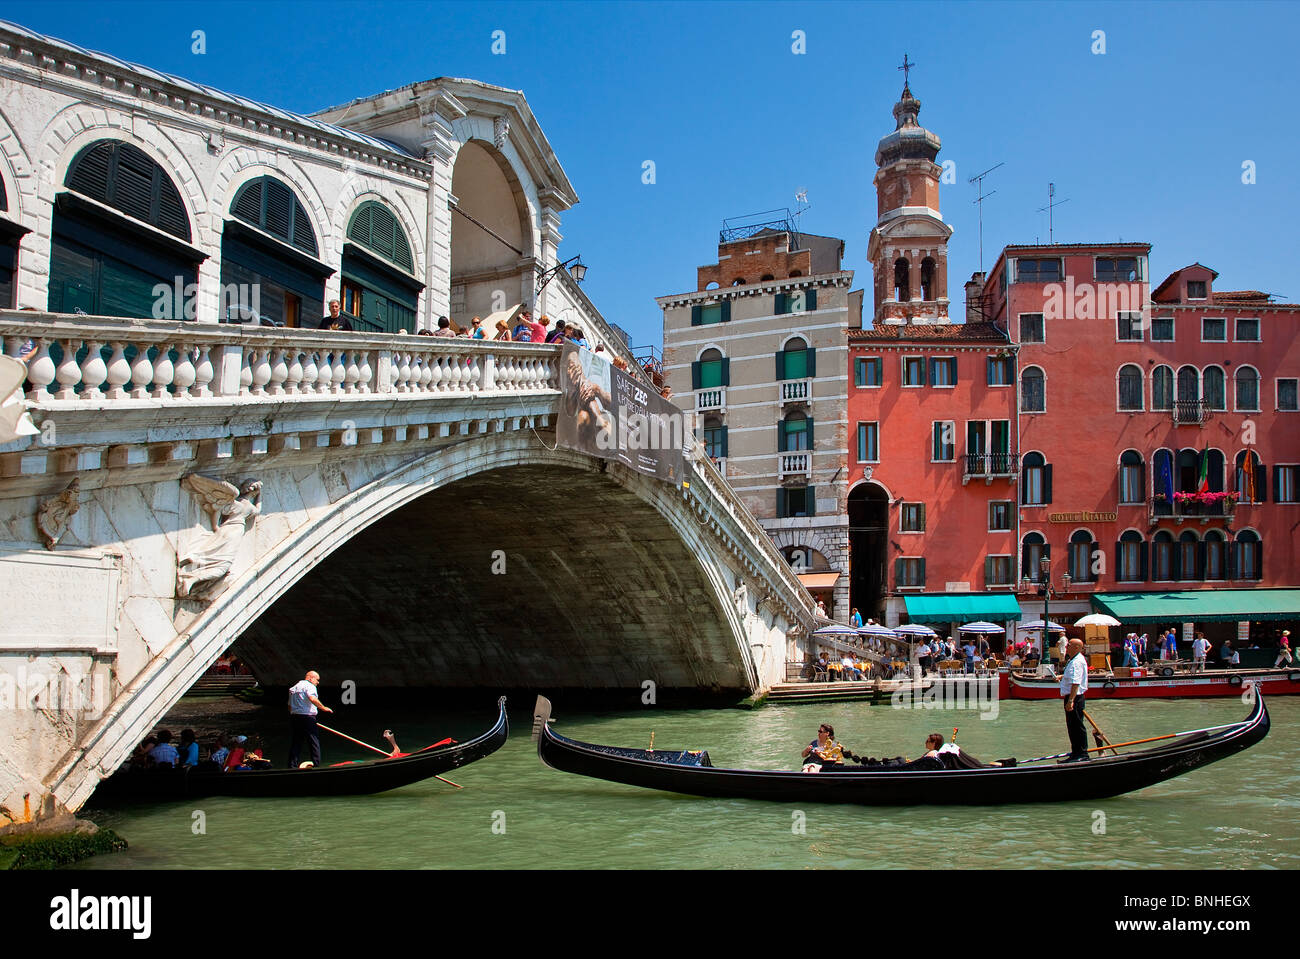 Europa, Italia, Venecia, Venecia, catalogada como Patrimonio de la Humanidad por la UNESCO, el Puente de Rialto y el Gran canal Foto de stock